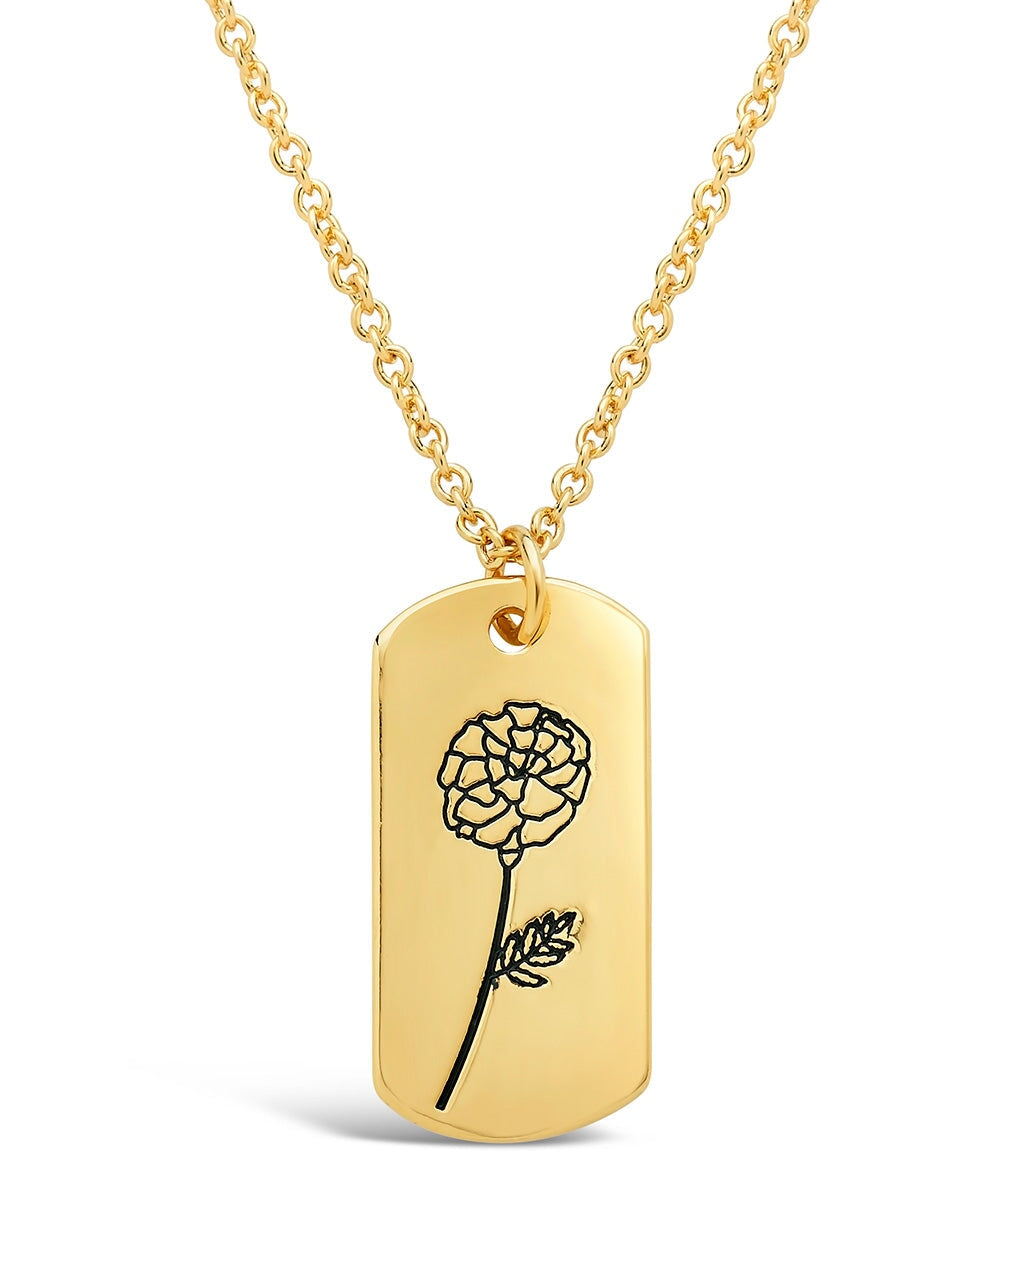 Birth Flower Pendant Necklace Sterling Forever Gold October / Marigold 